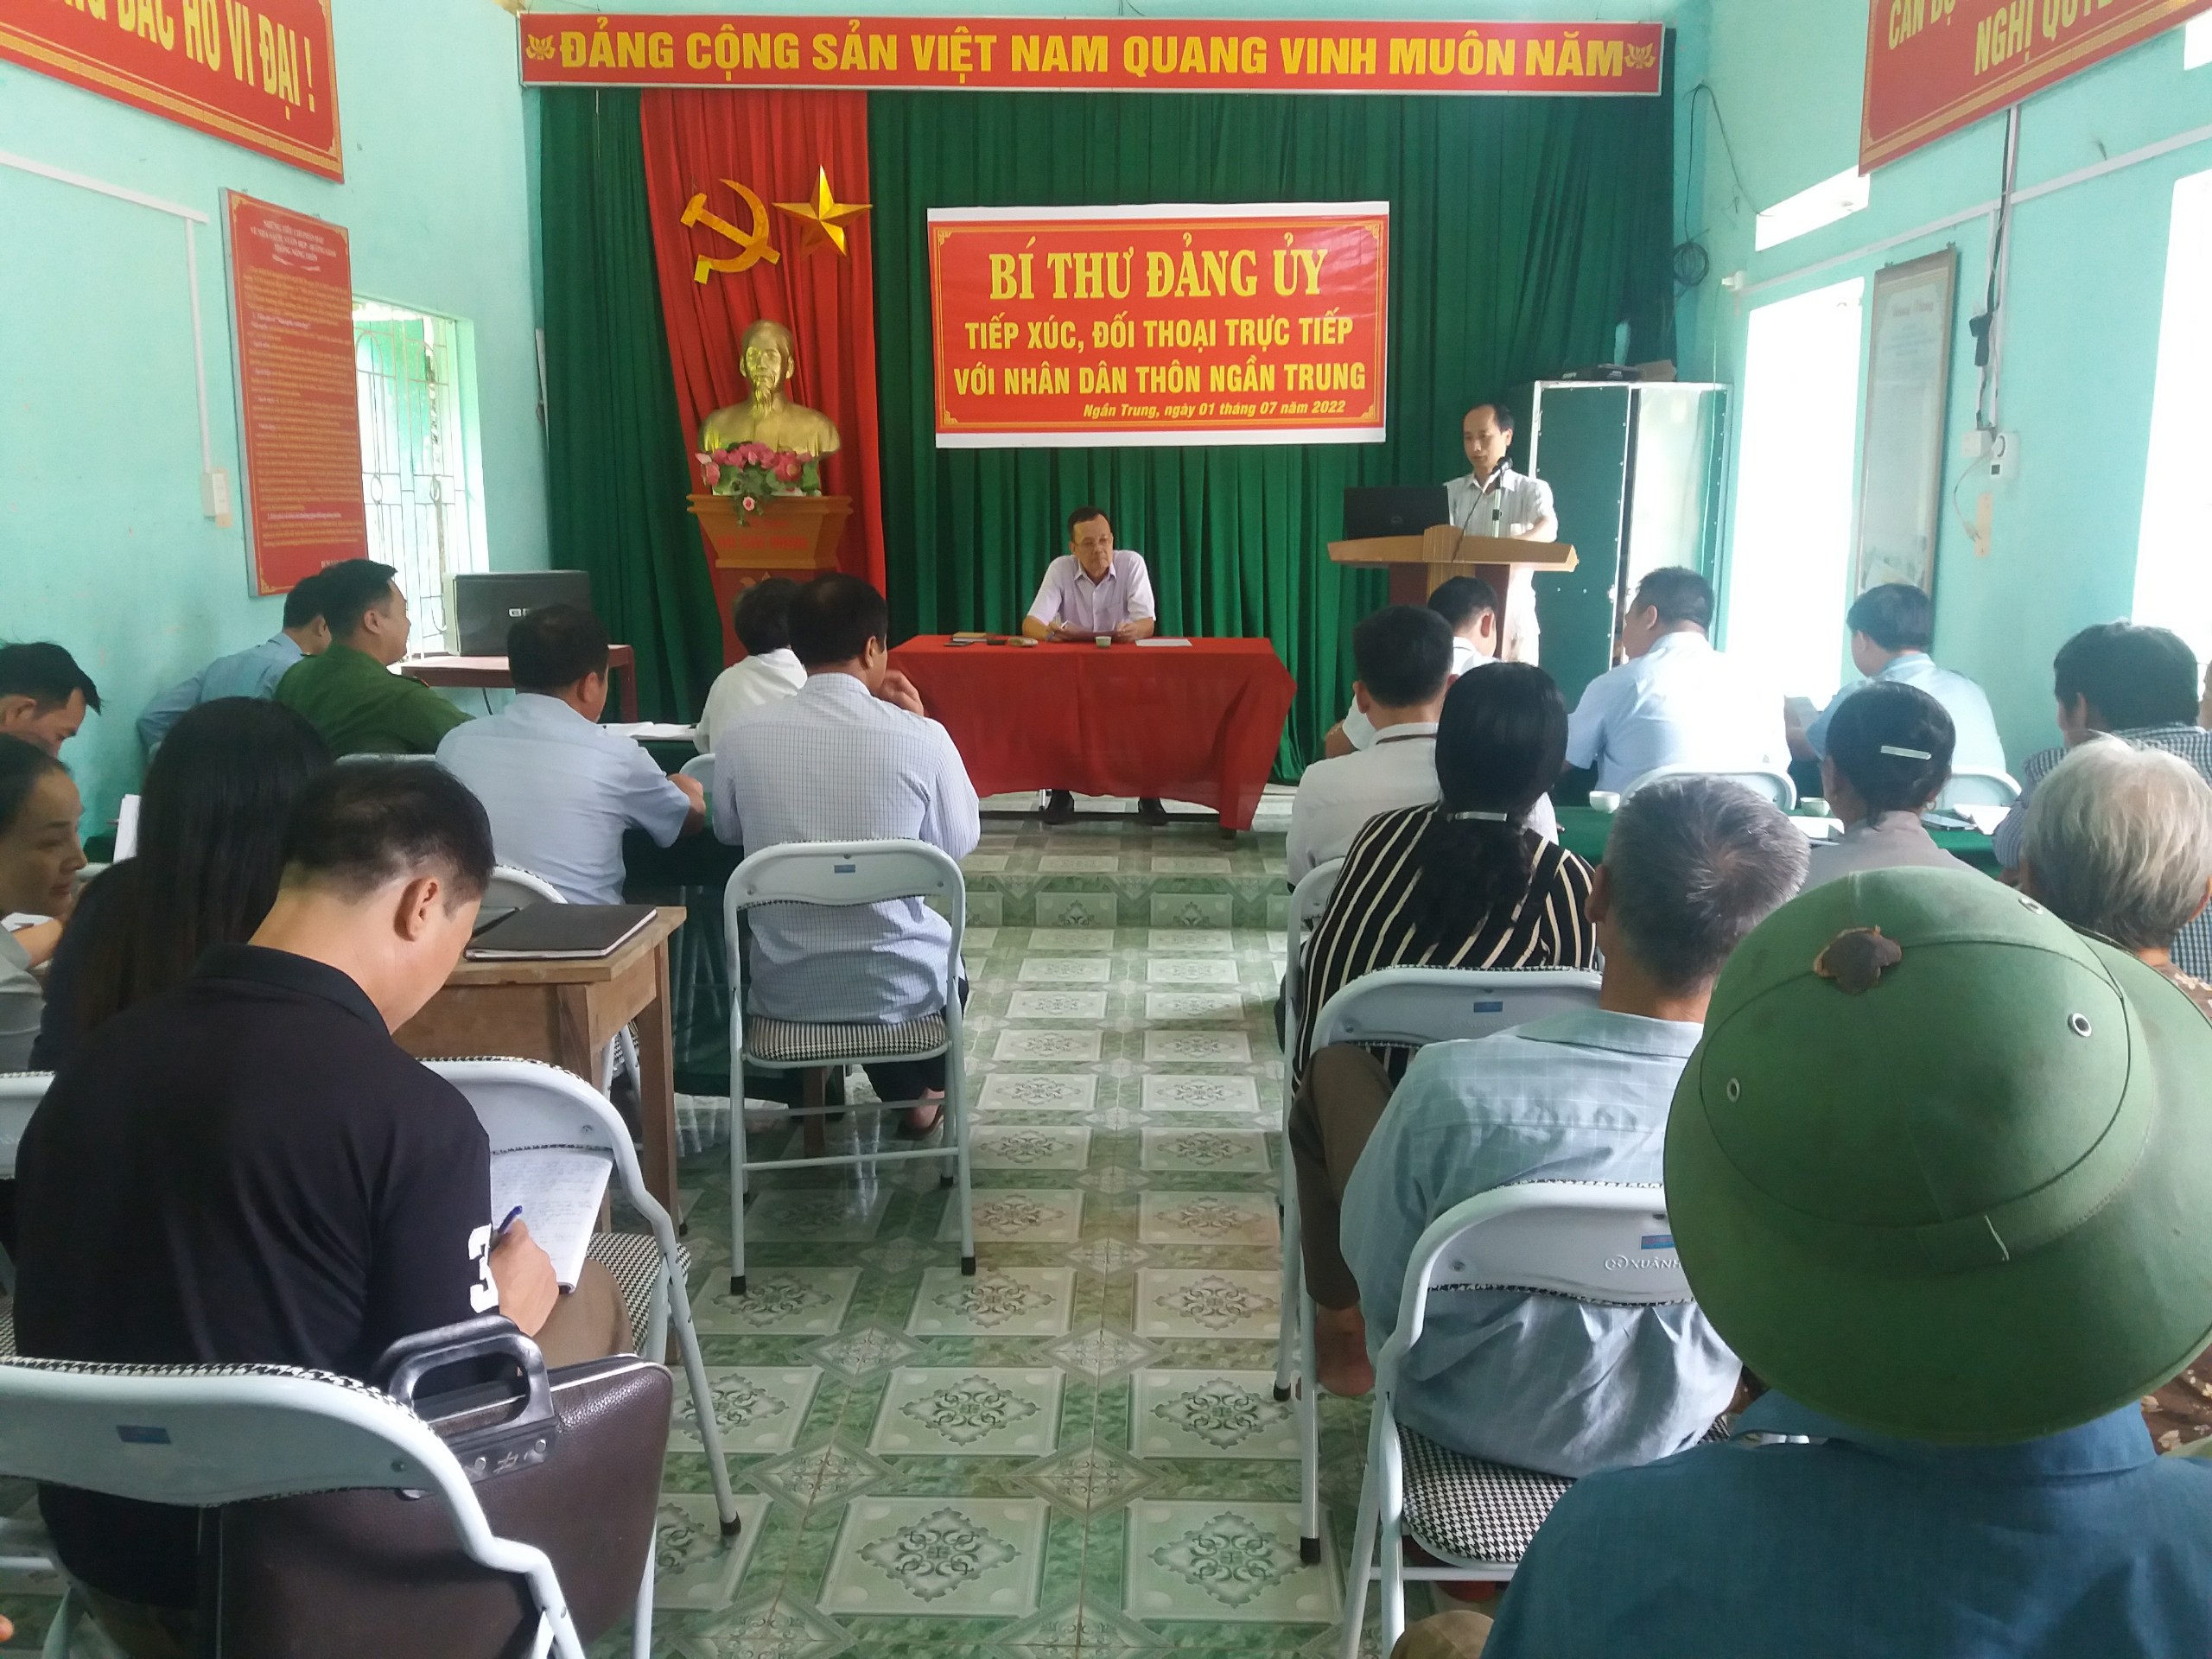 Bí thư Đảng ủy xã Tân Thành tiếp xúc đối thoại trực tiếp với nhân thôn Ngần Trung